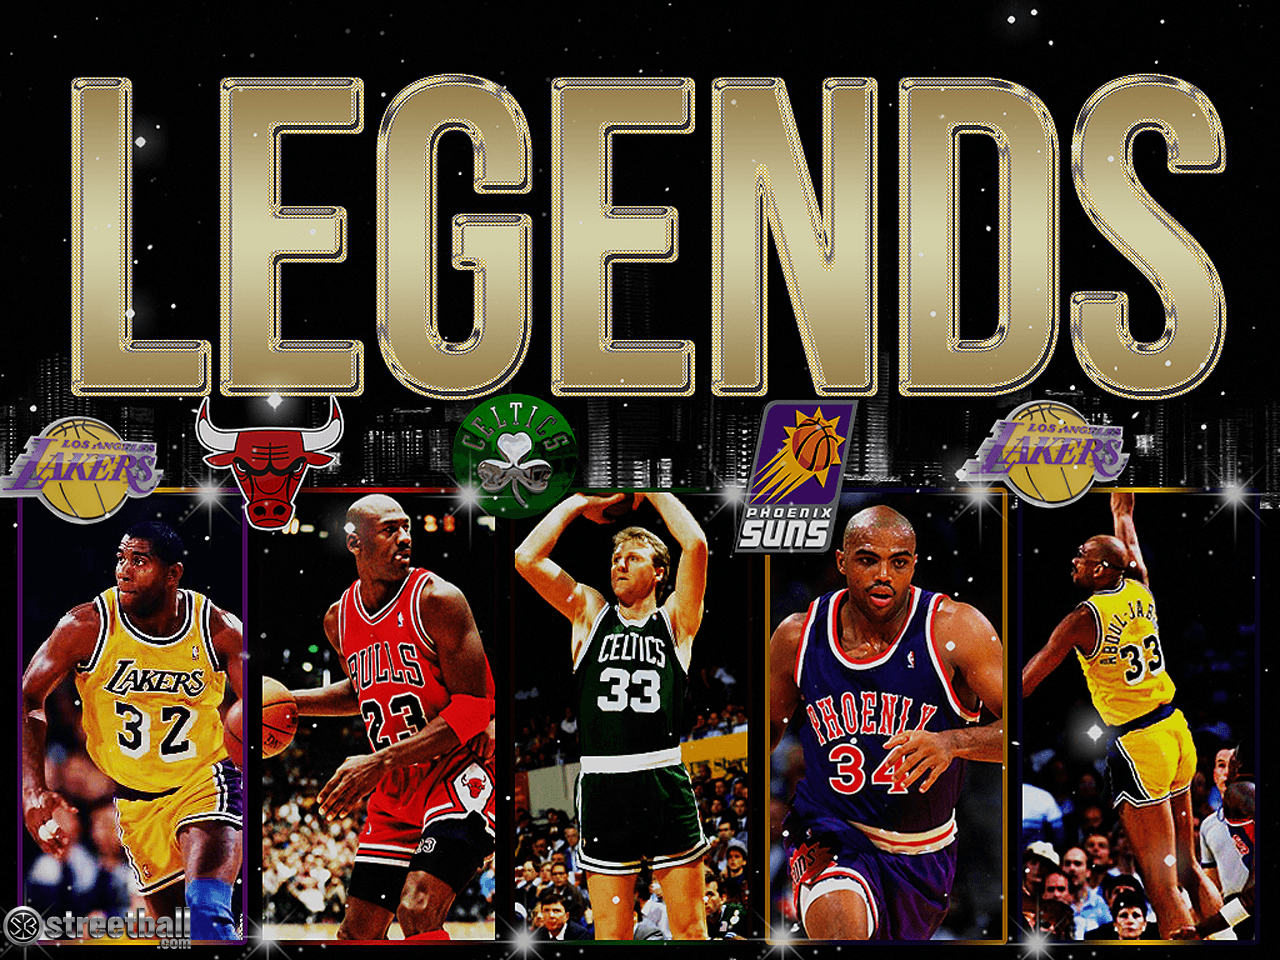 Charles Barkley wallpaper. Charles Barkley Legends Basketball